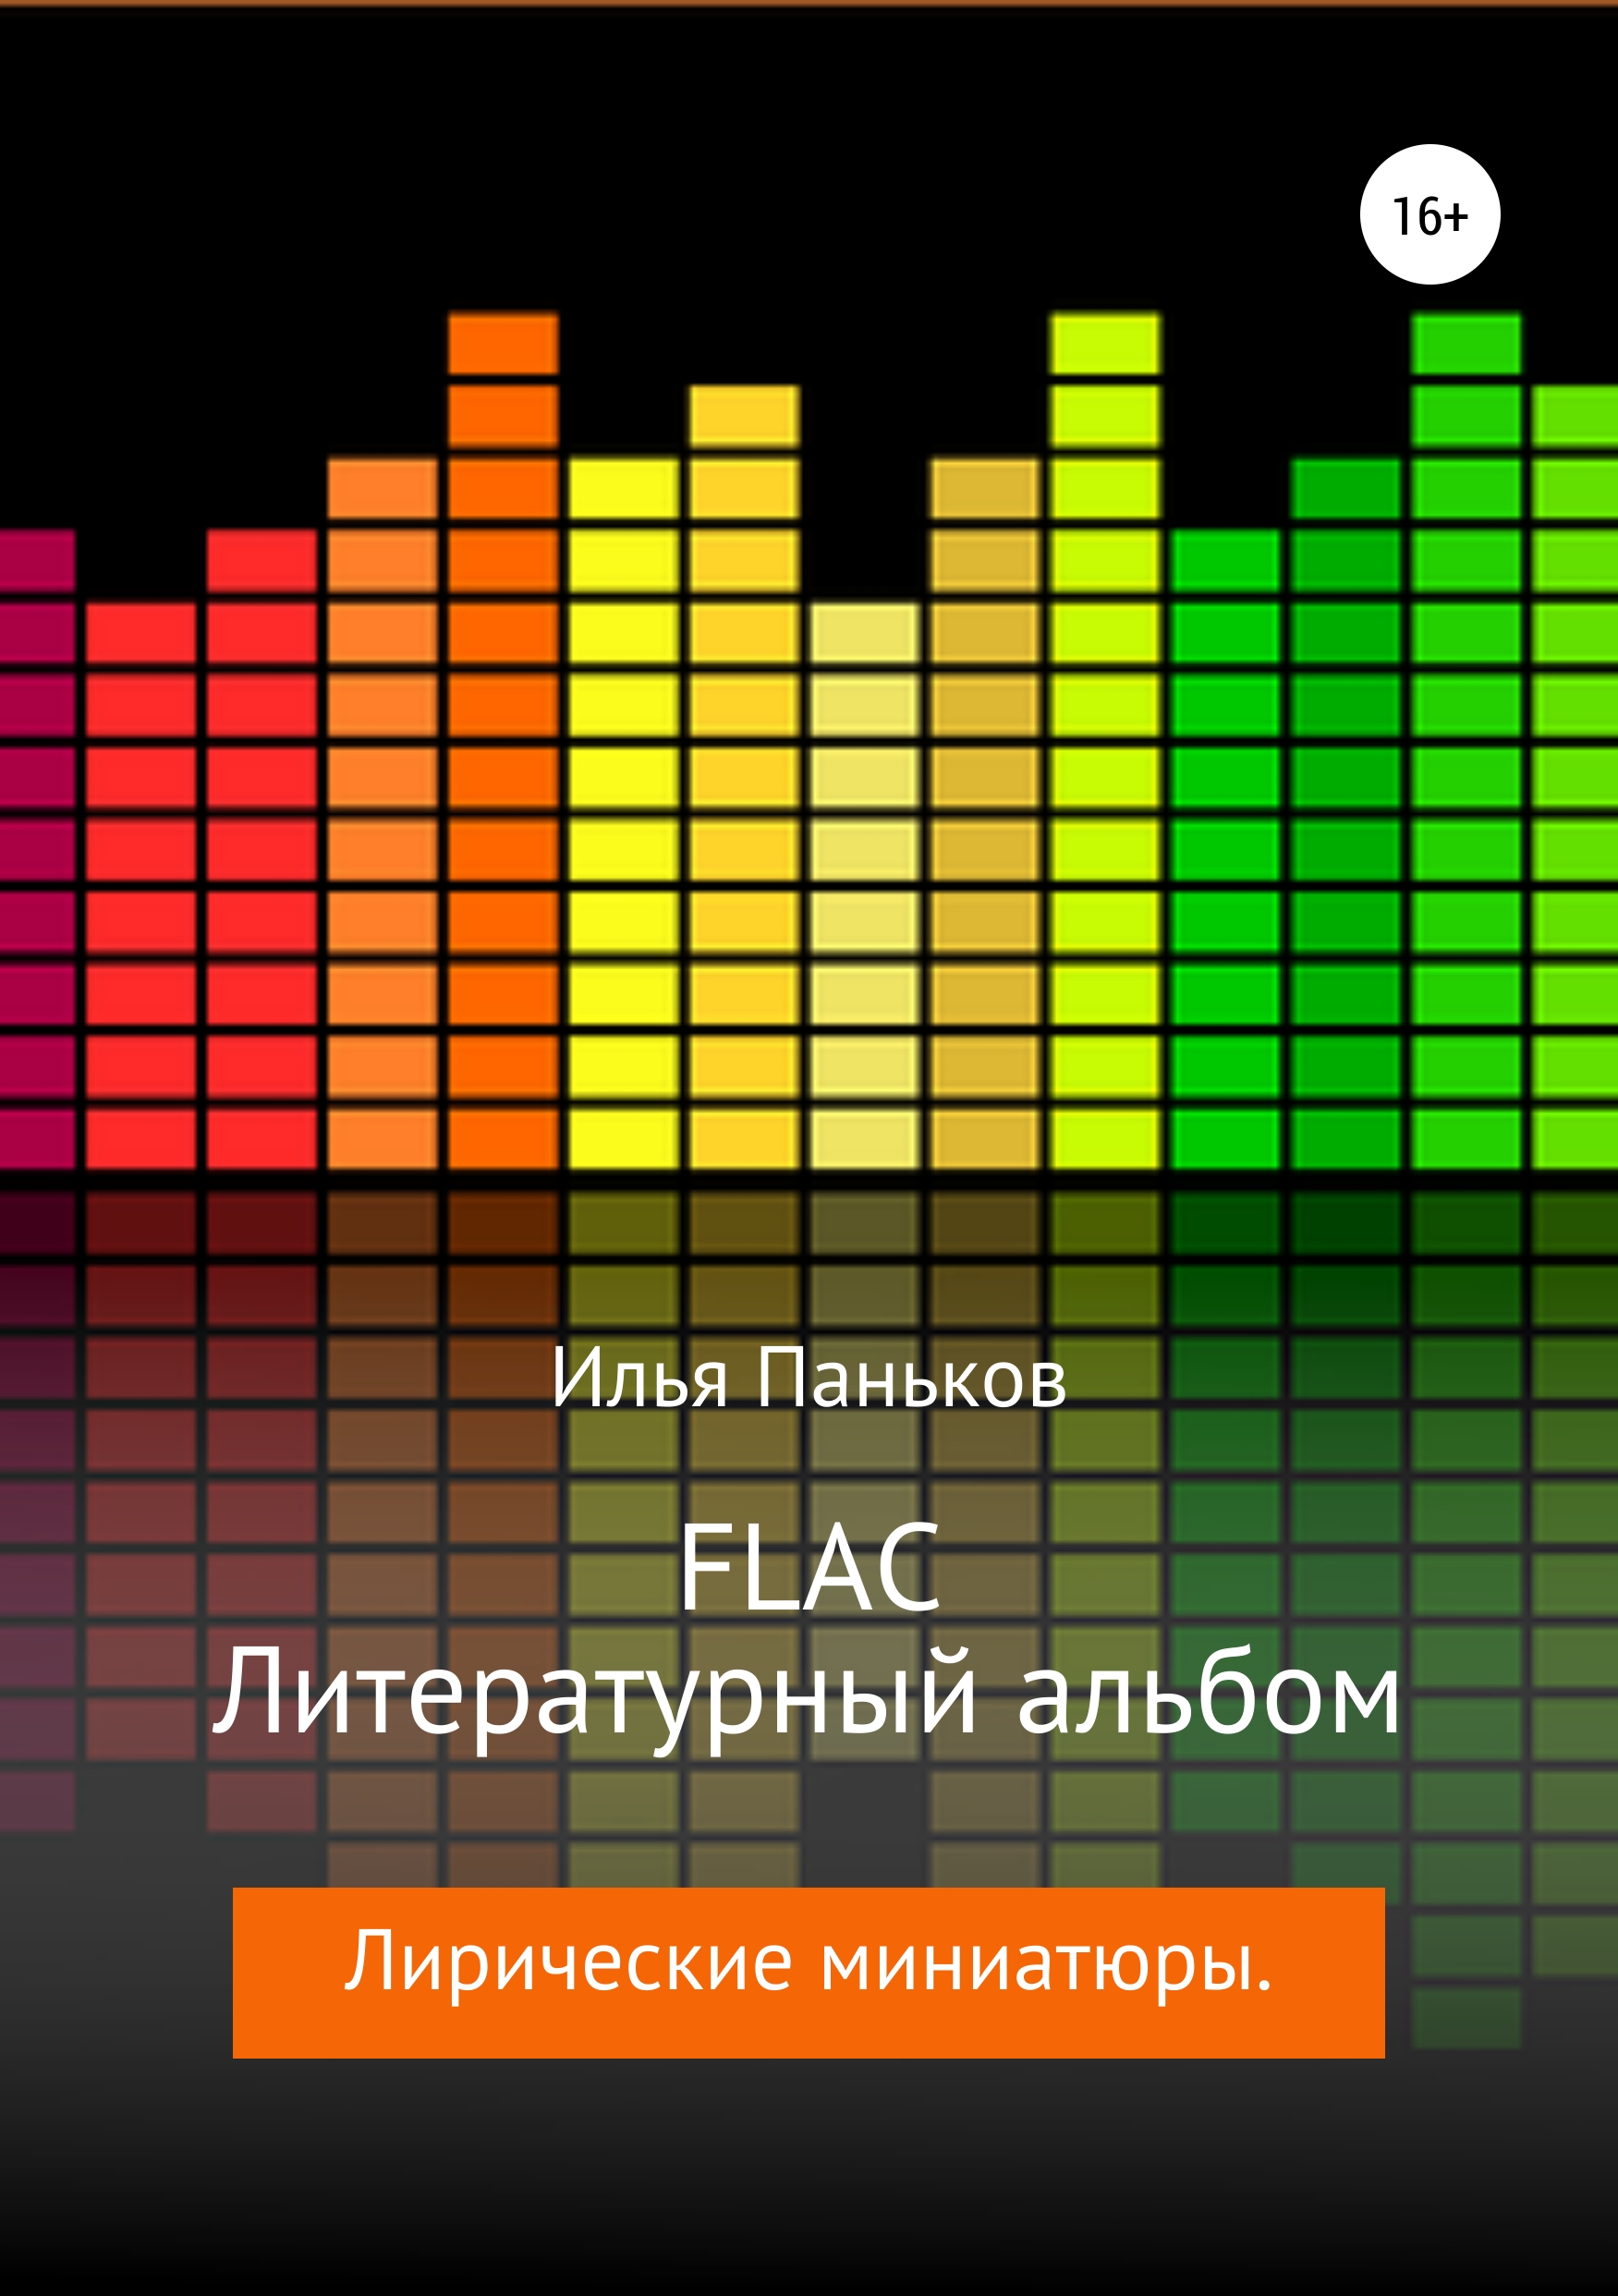 FLAC– Литературный альбом